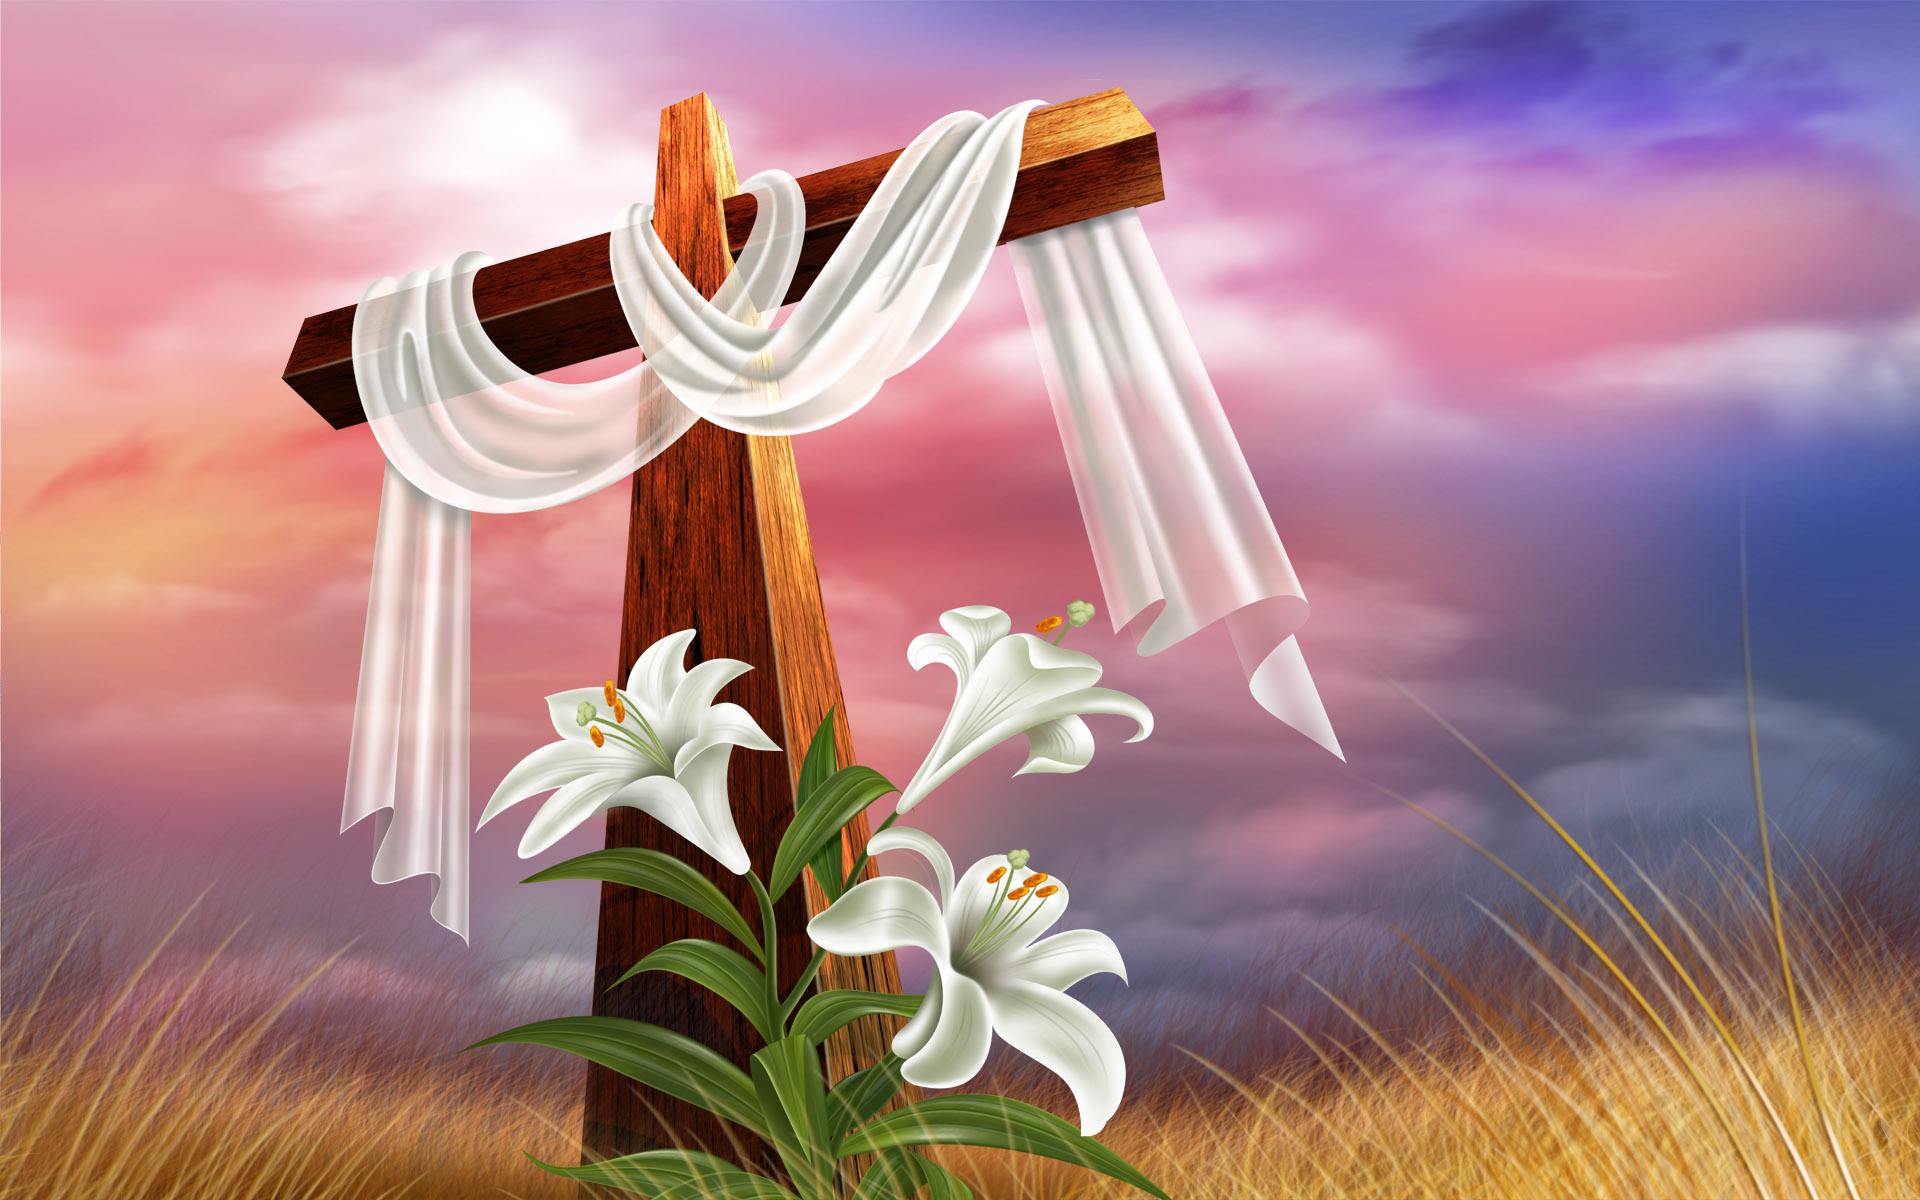 复活节的意义 绝不仅仅在彩蛋和兔子身上 耶稣